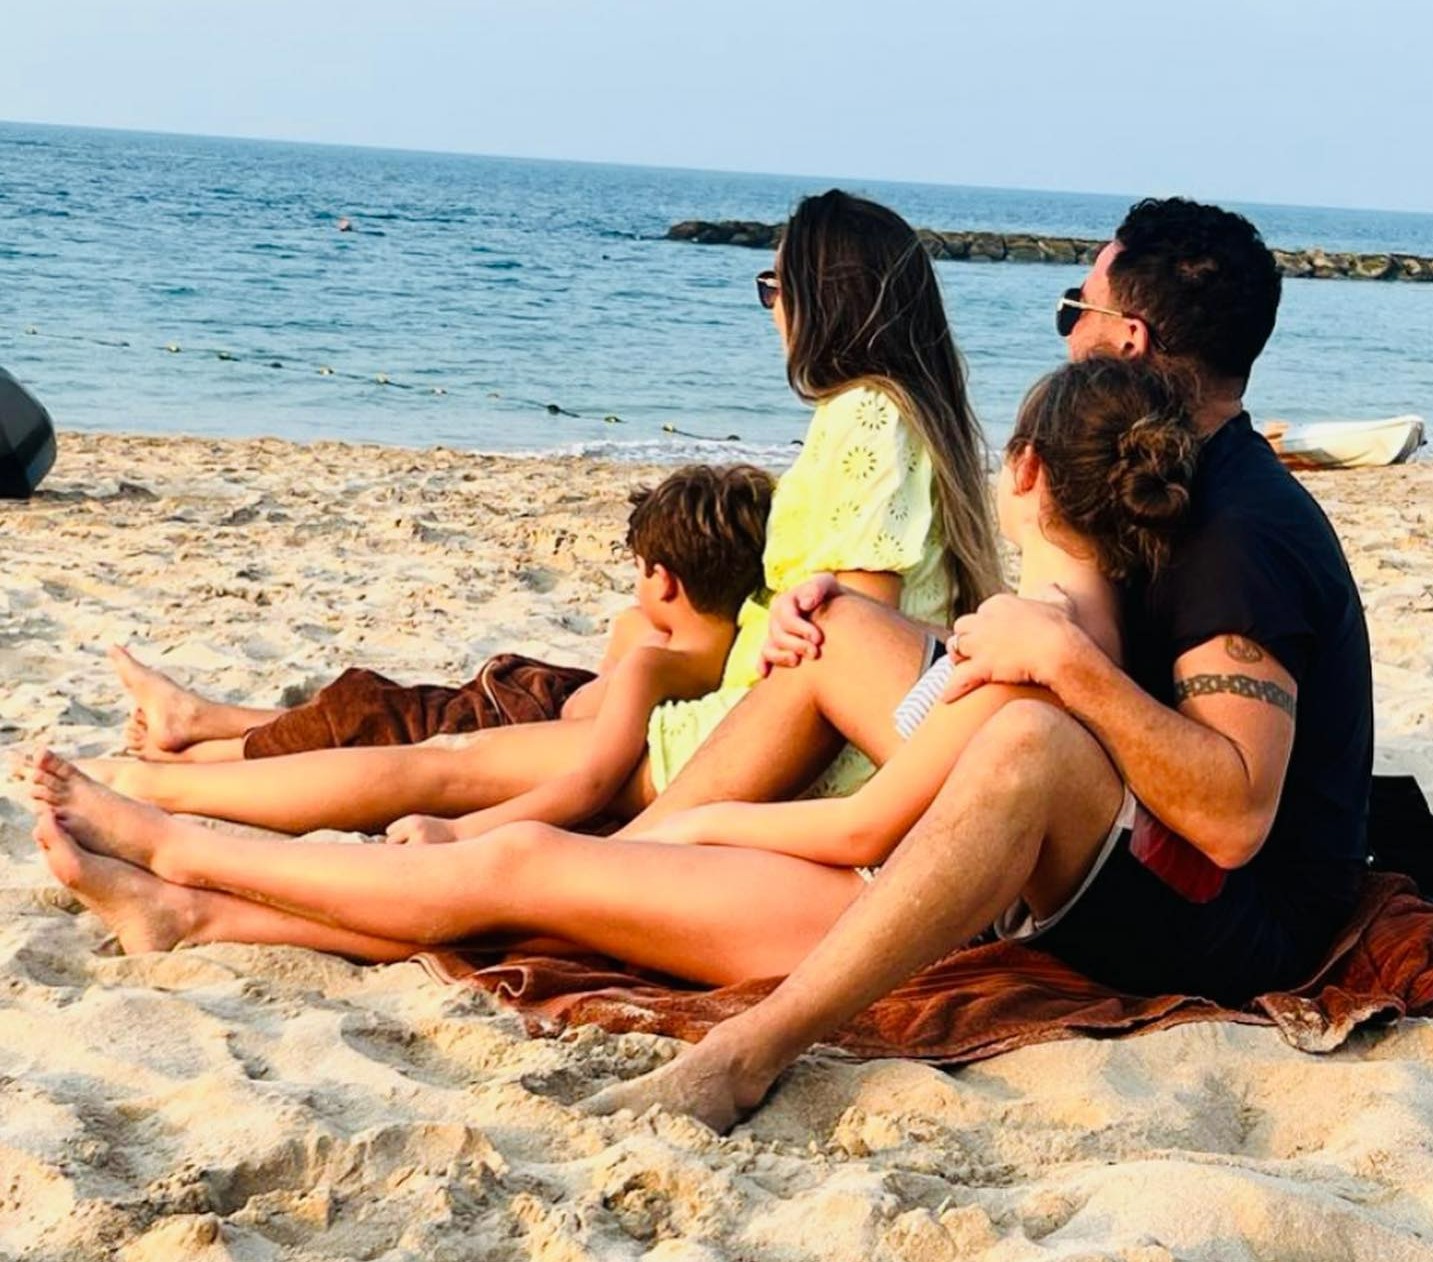 Der 34-jährige Arzt machte einen Strandschnappschuss mit seinen beiden Kindern